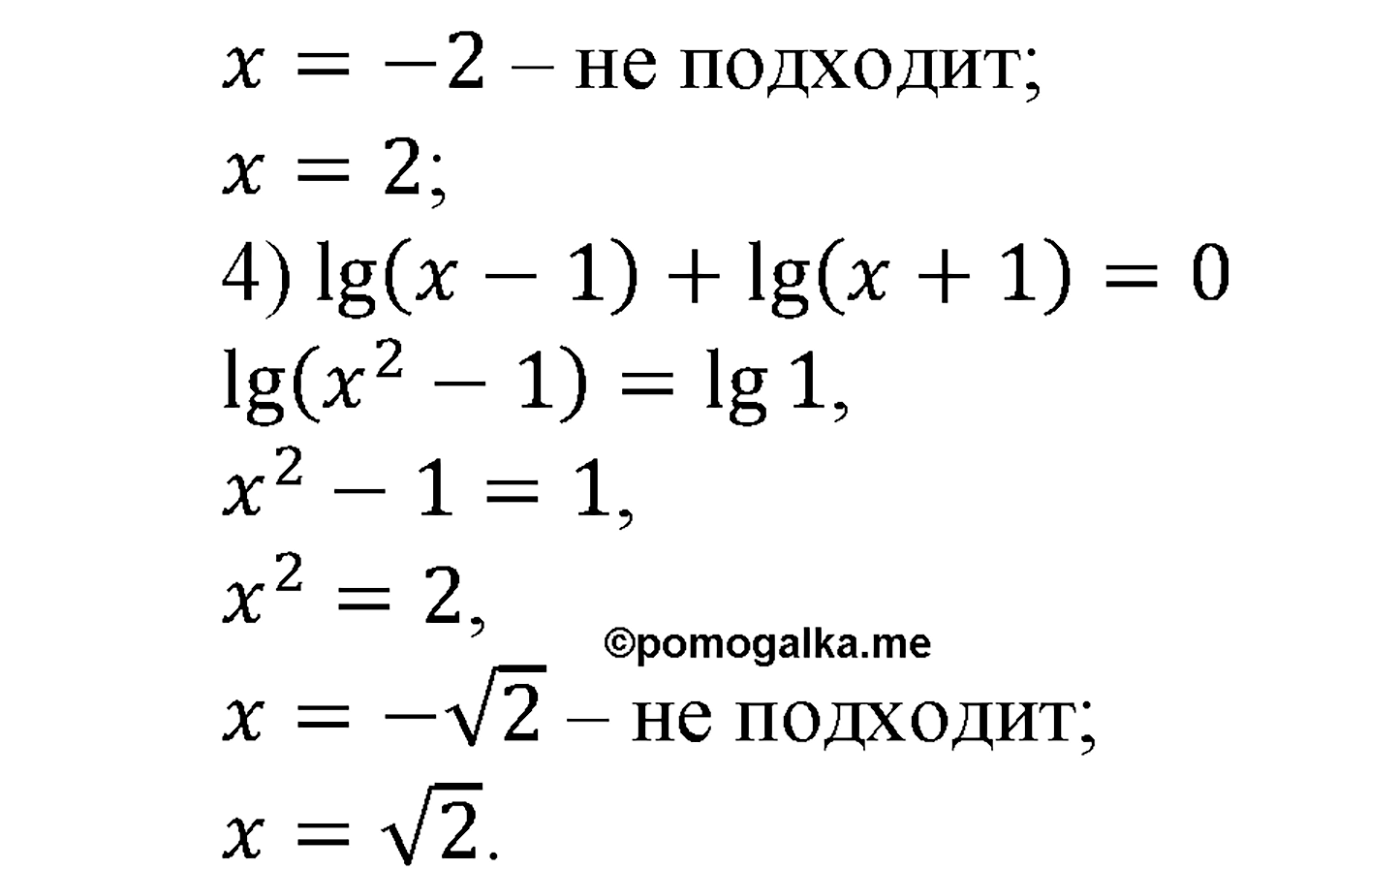 разбор задачи №337 по алгебре за 10-11 класс из учебника Алимова, Колягина